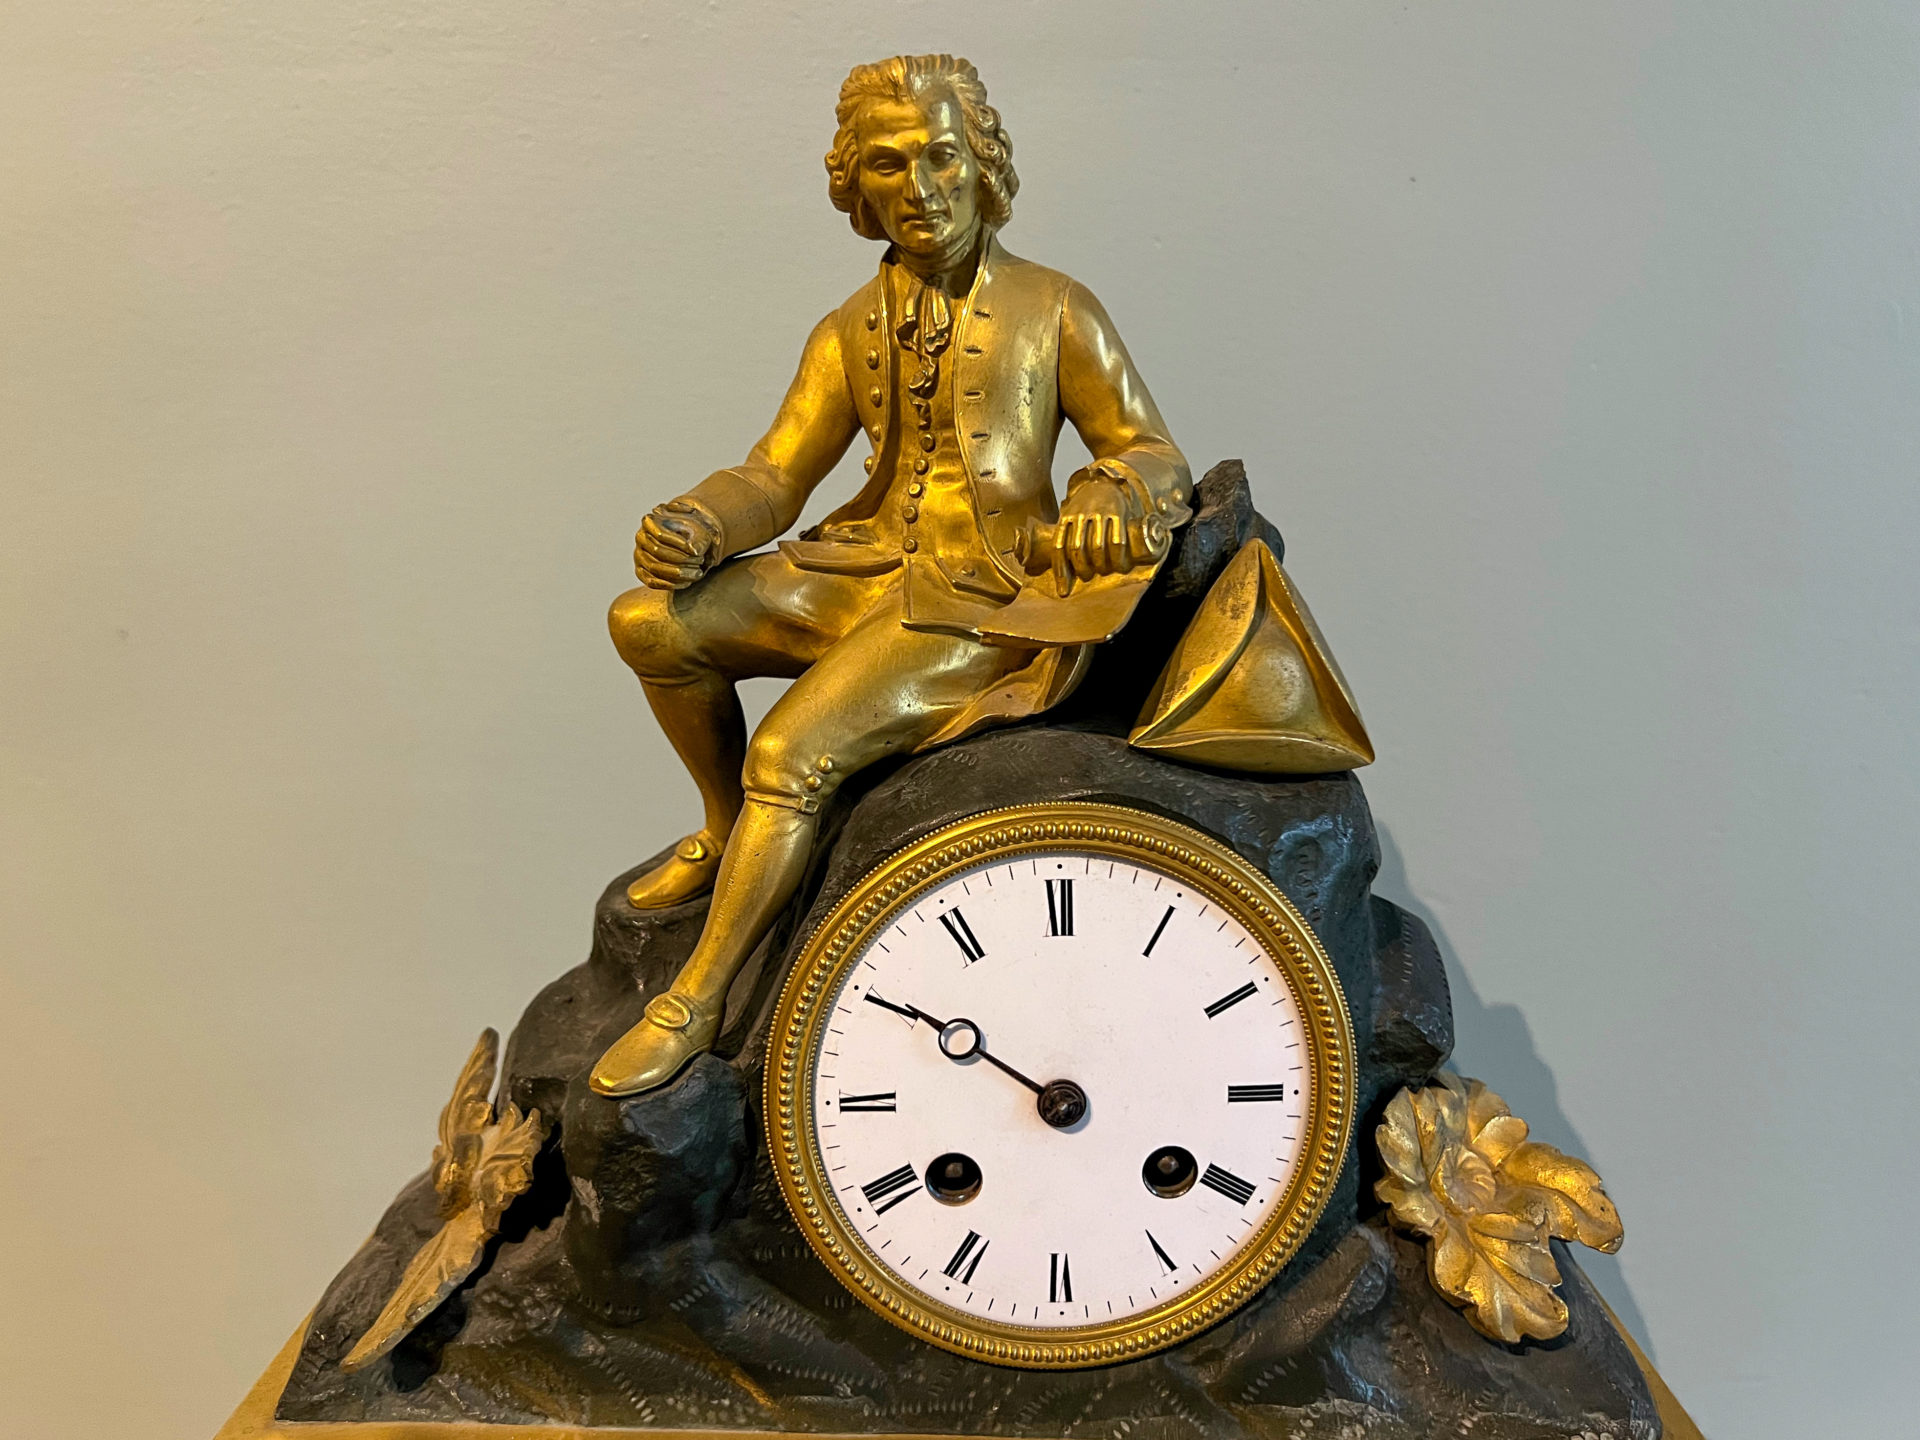 Statue von Jean-Jacques Rousseau auf einer goldenen Uhr, gesehen im Museum der Domaine de Chaalis